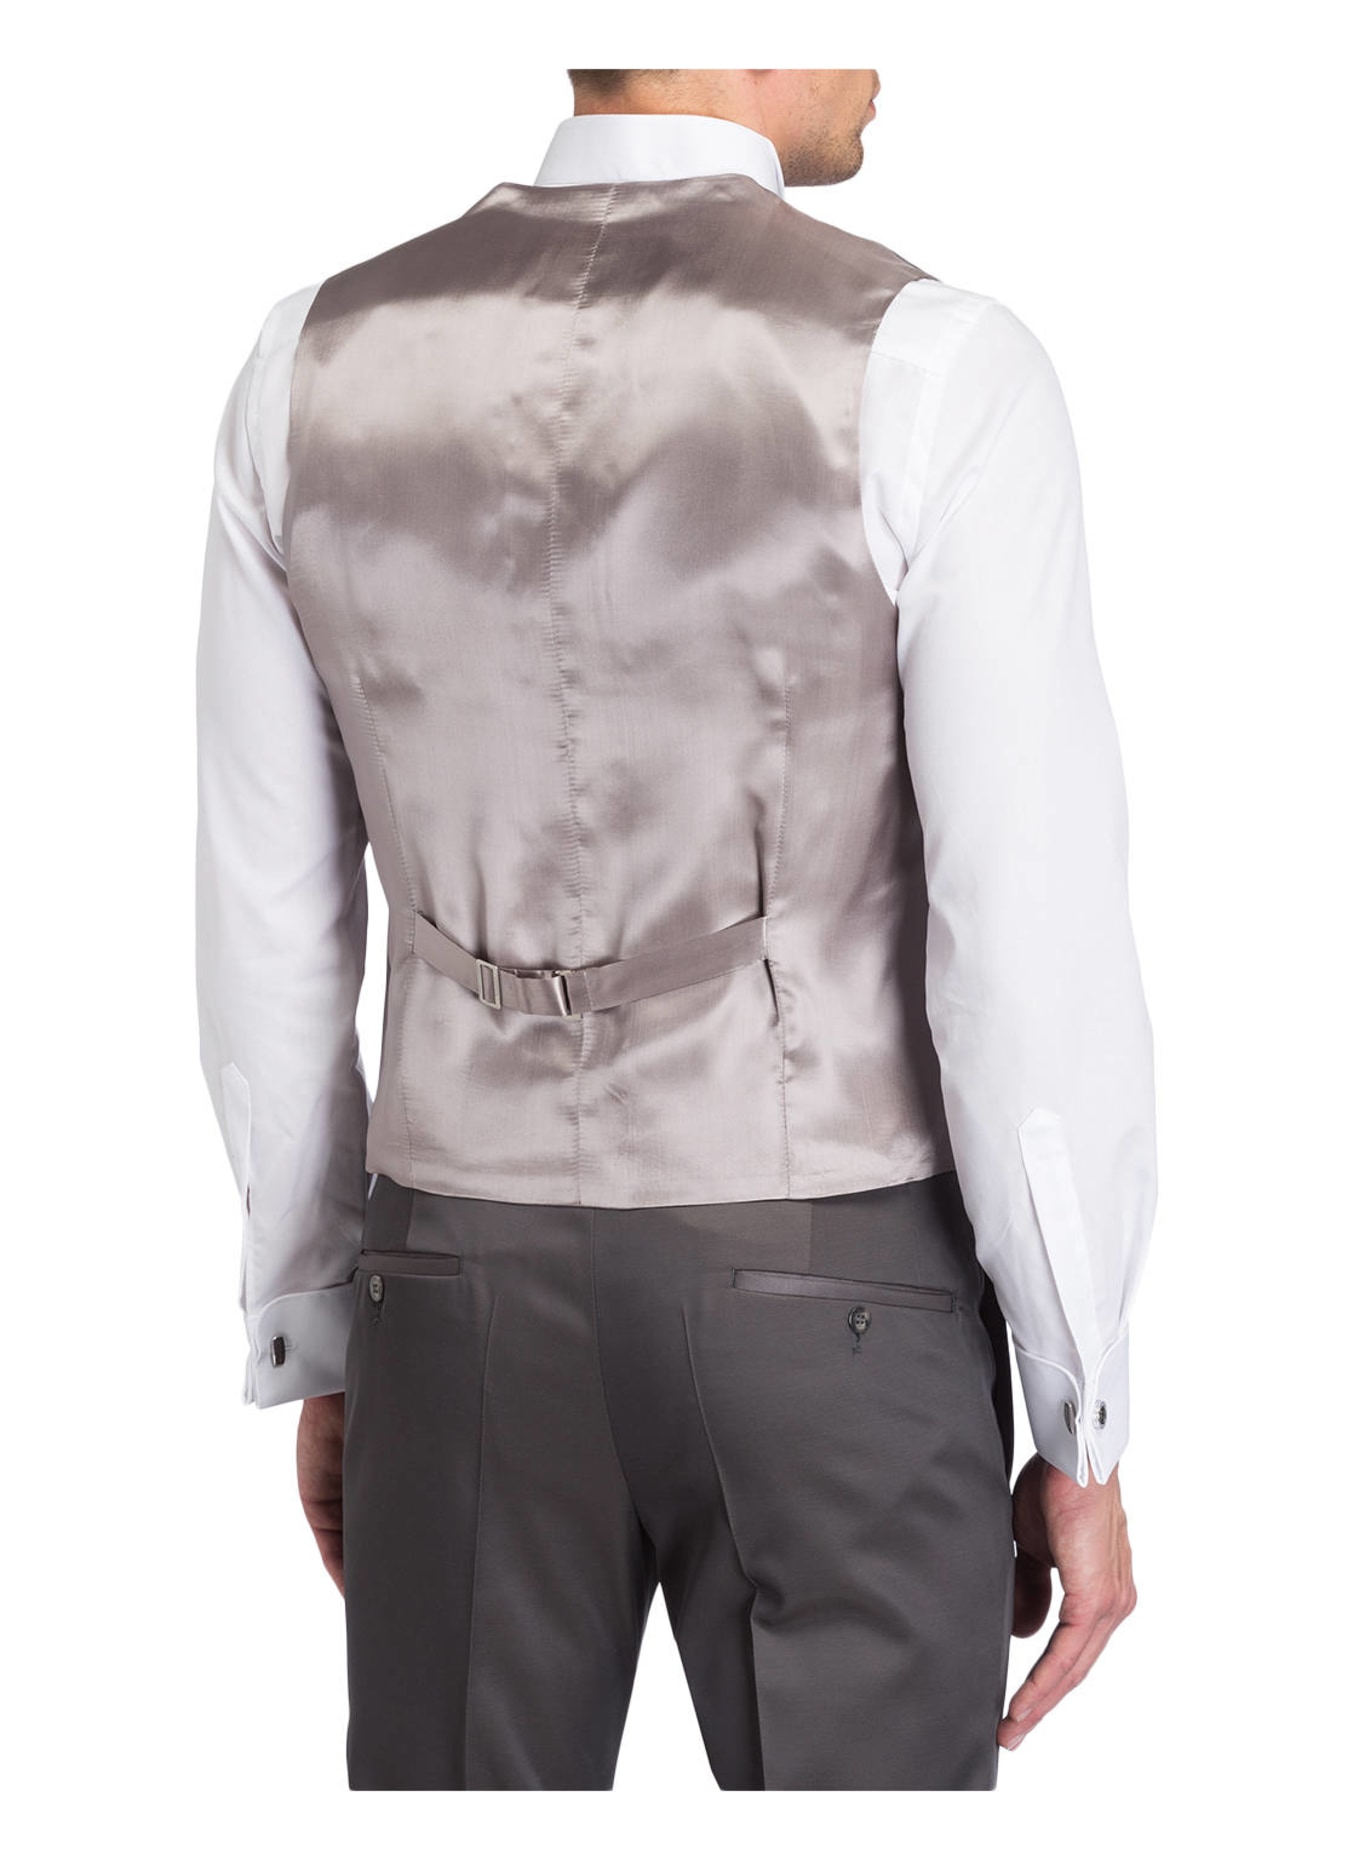 WILVORST Suit waistcoat slim fit, Color: GRAY (Image 3)